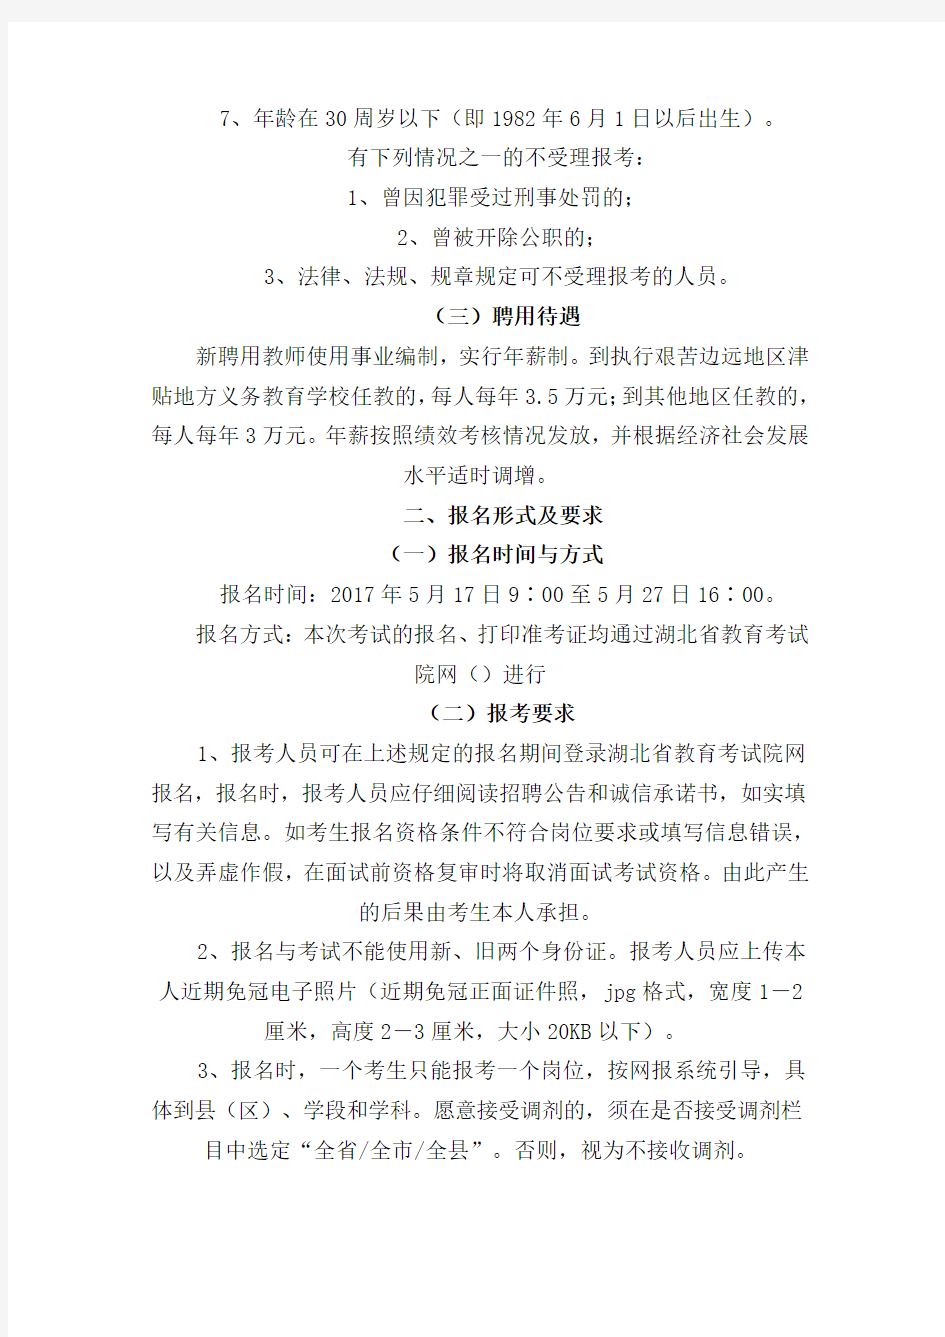 最新精品2017年湖北省农村义务教育学校教师招聘考试公告